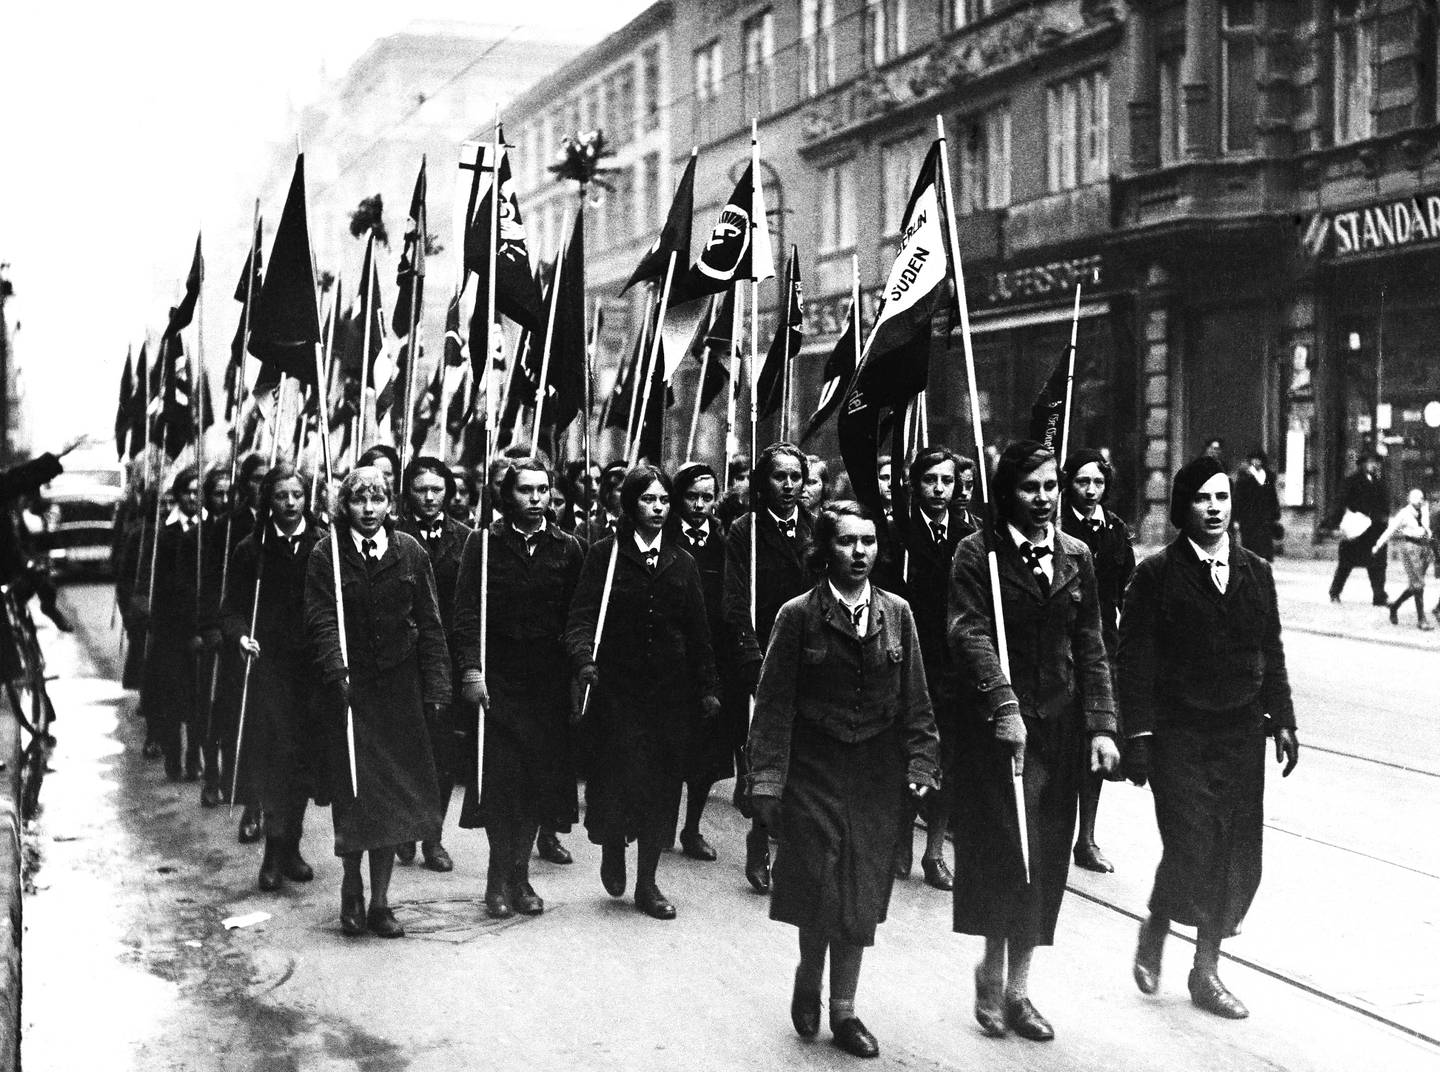 Jenter i nazistenes ungdomsorganisasjon marsjerer i støtte for Hitlers valgseier 5. mars 1933. 44 prosent av tyskerne stemte på nasjonalsosialistene.